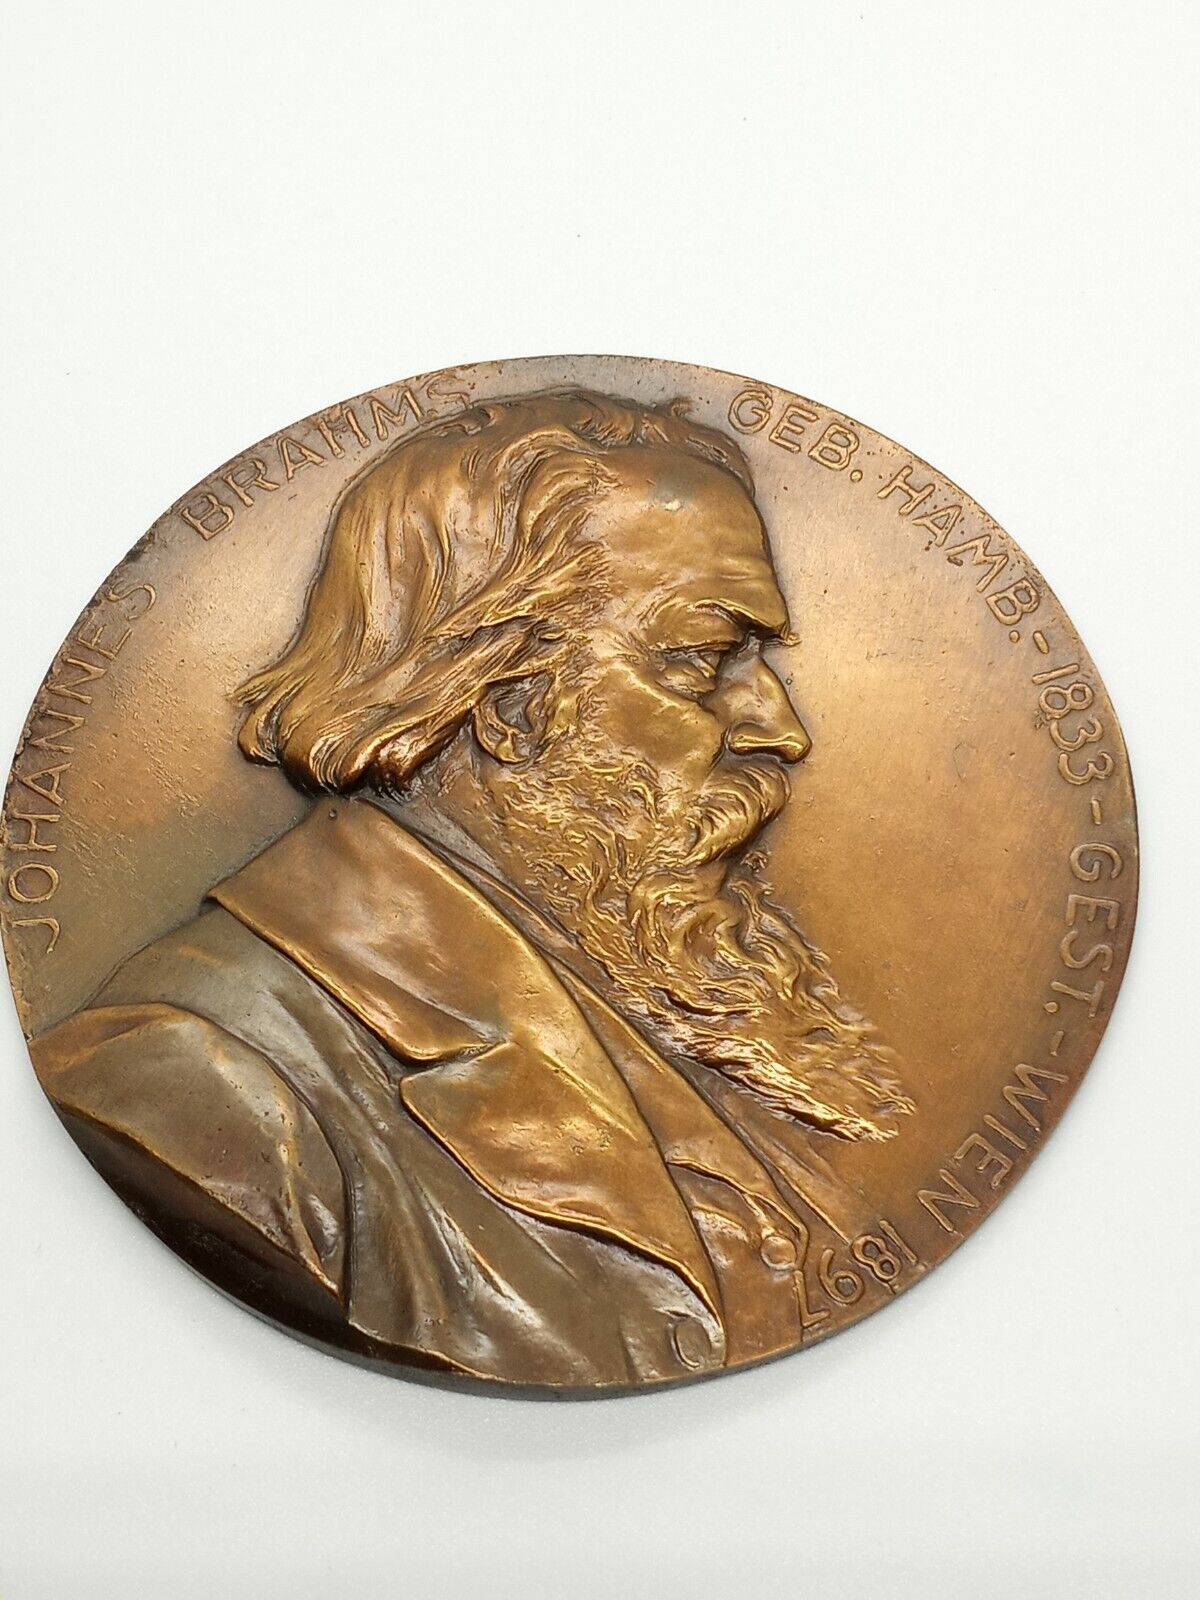 Franz Stiasny Johannes Brahms Composer Bronze Plaque Antique Signed 1833-1897